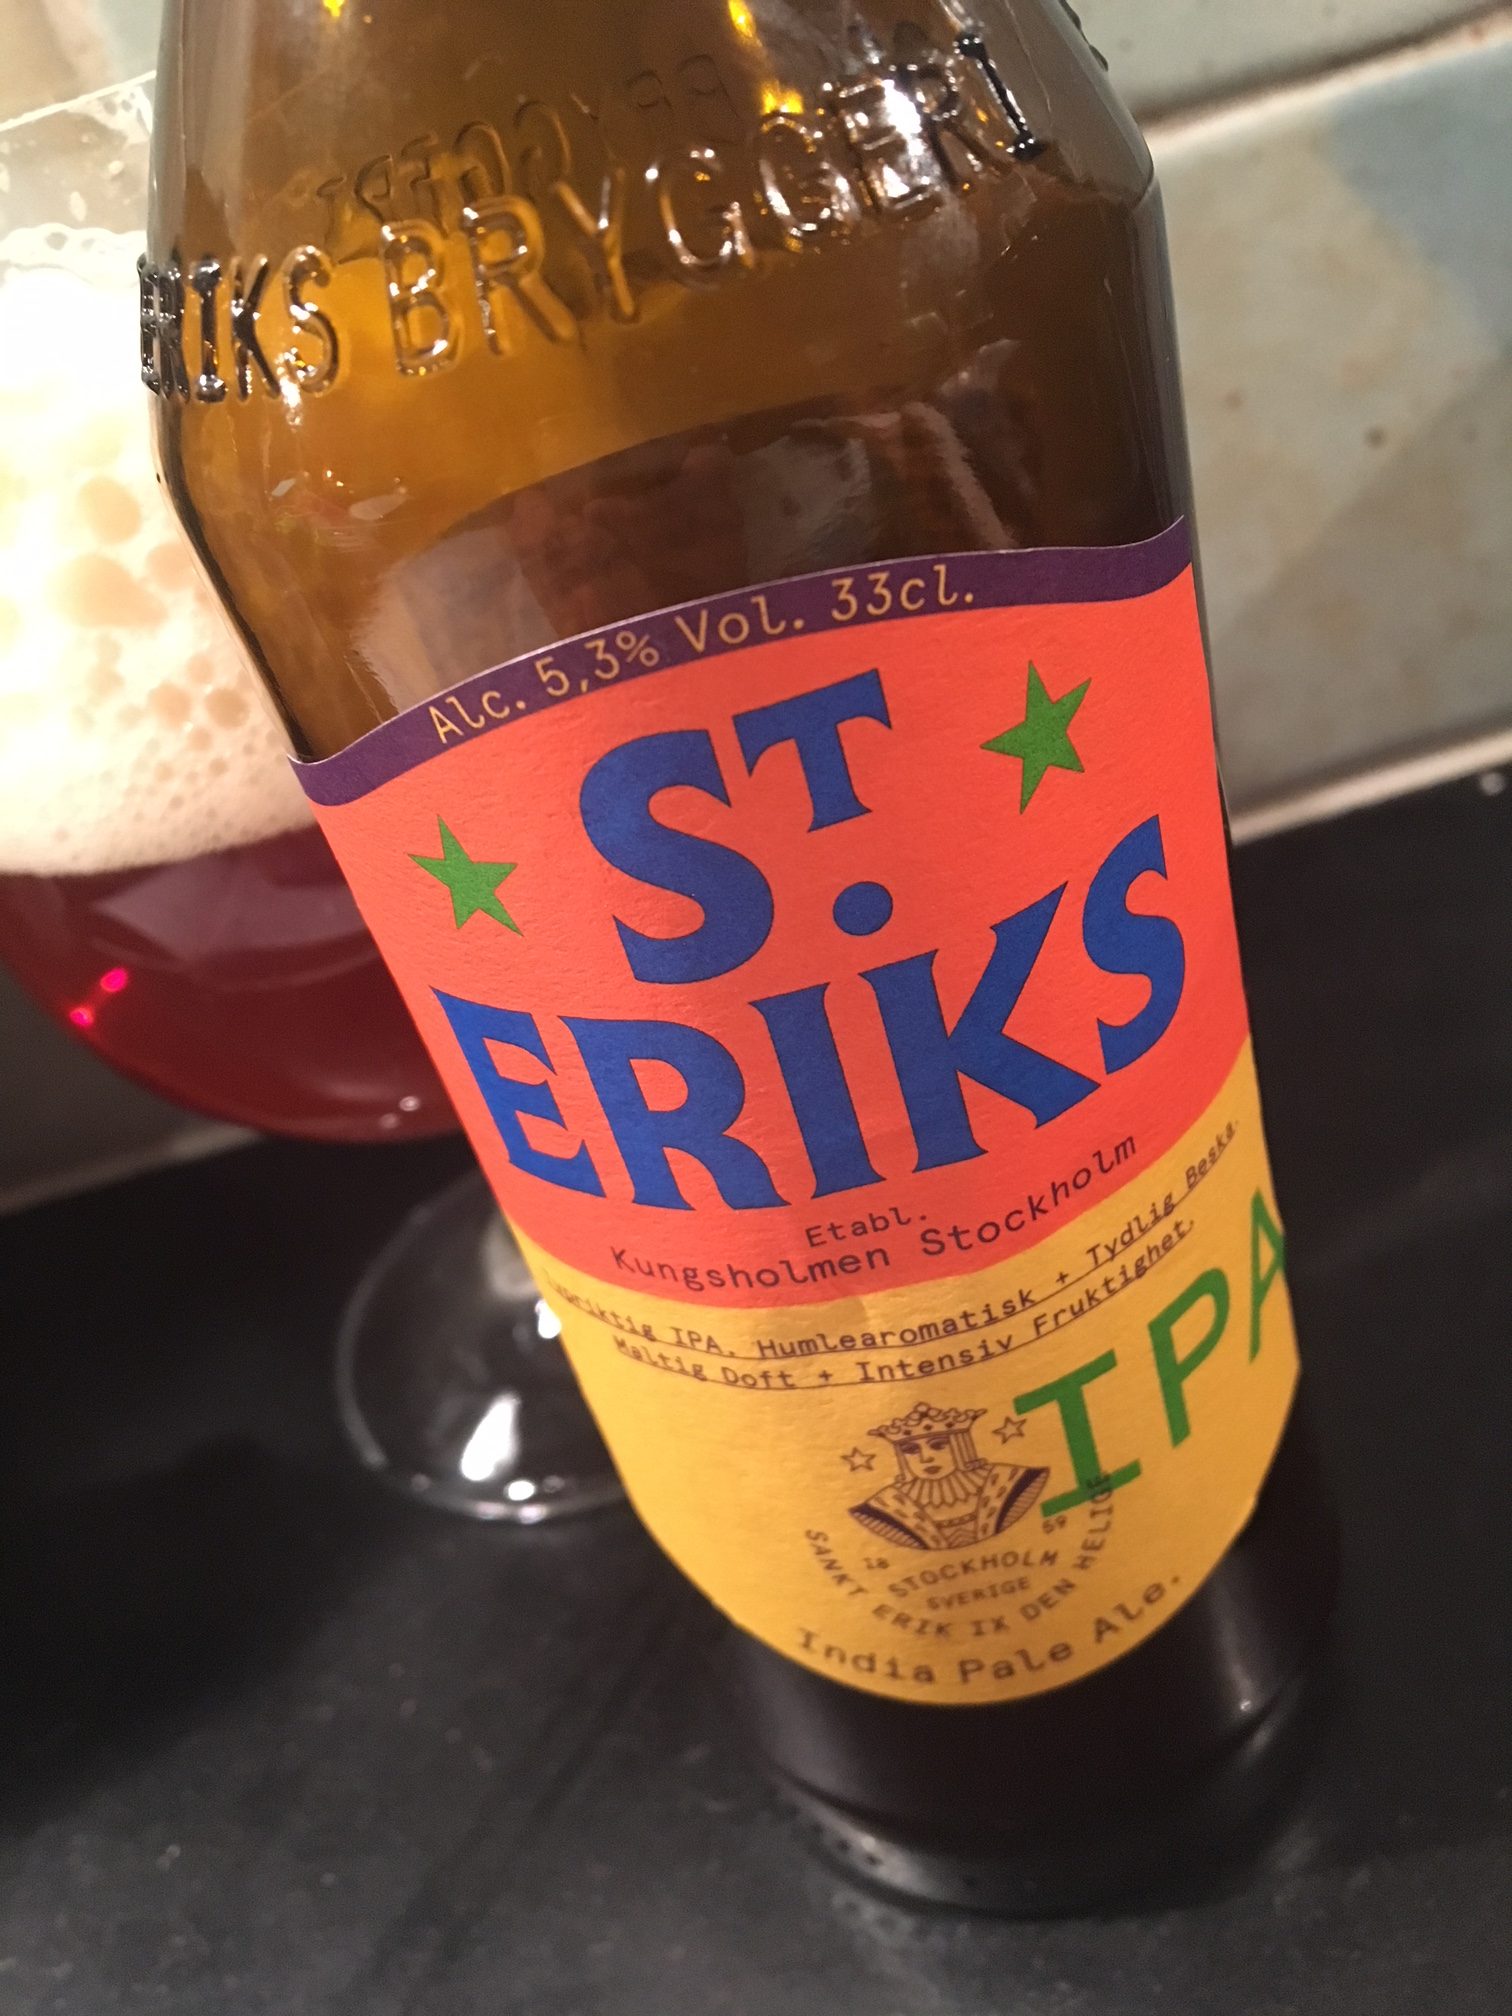 St Eriks IPA från St Eriks bryggeri. Foto: Joel Linderoth.